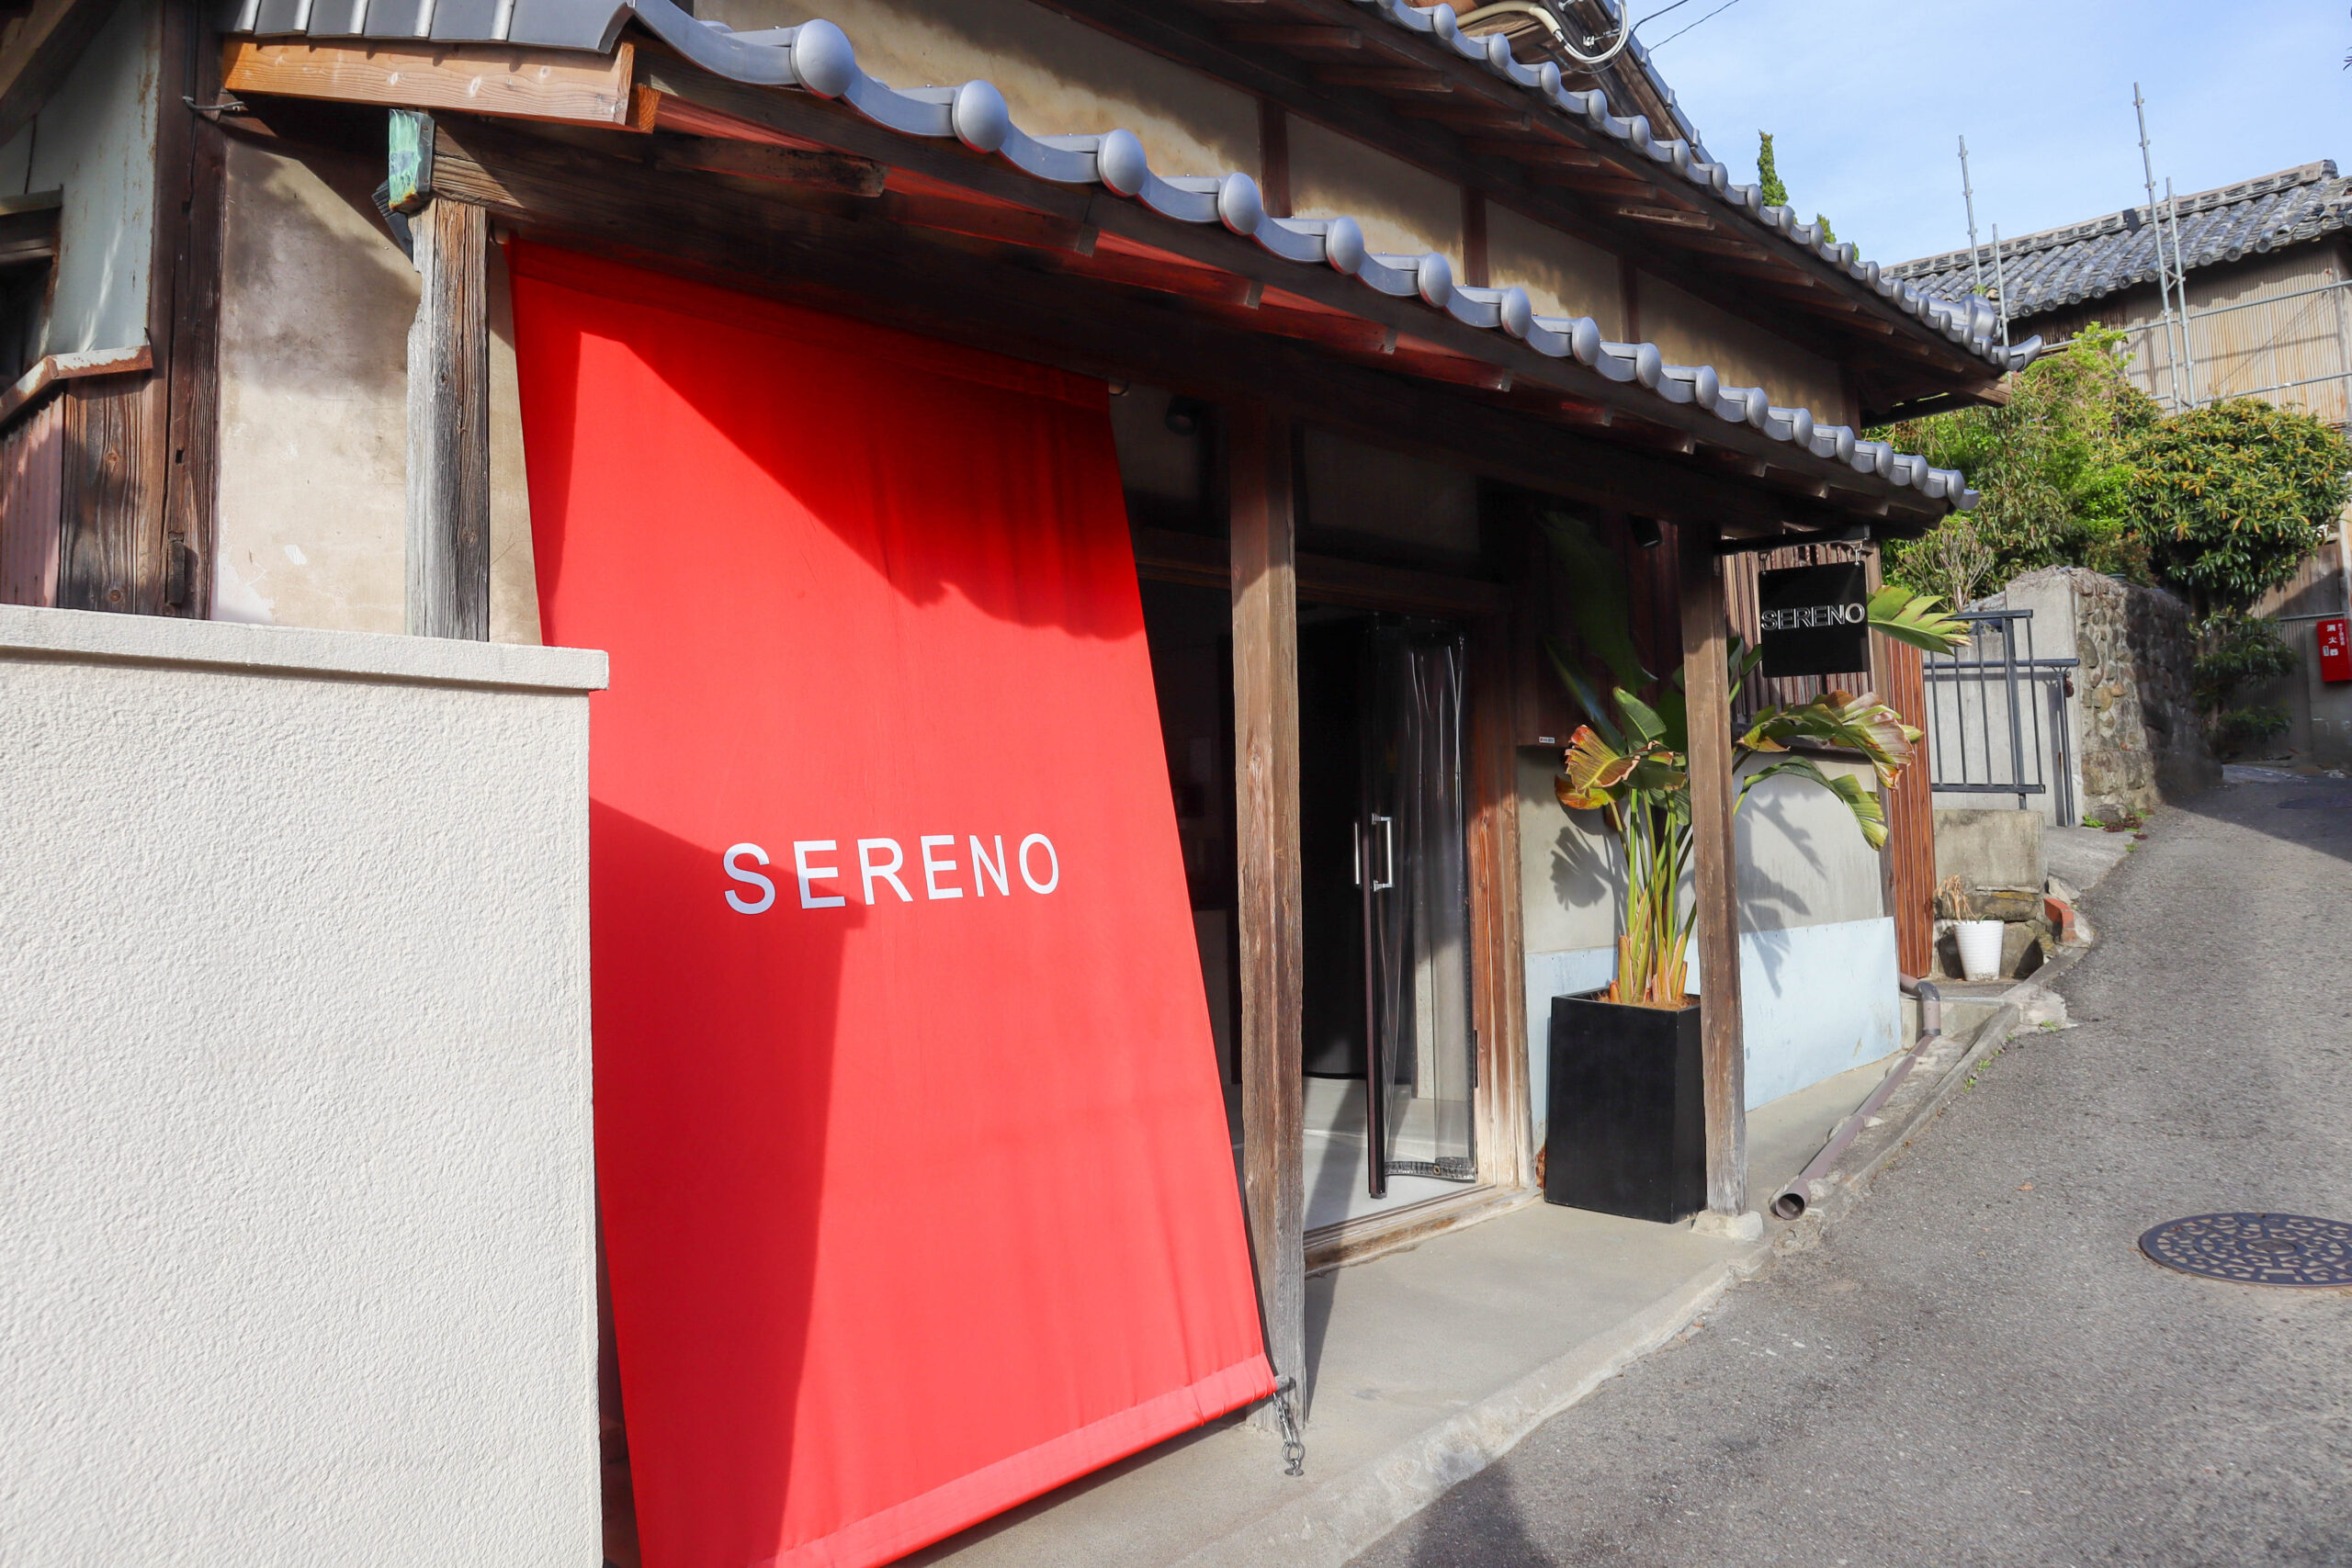 加太の町おこしから生まれた、父娘の思いと夢が詰まったお店「SERENO-seafood&cafe-」